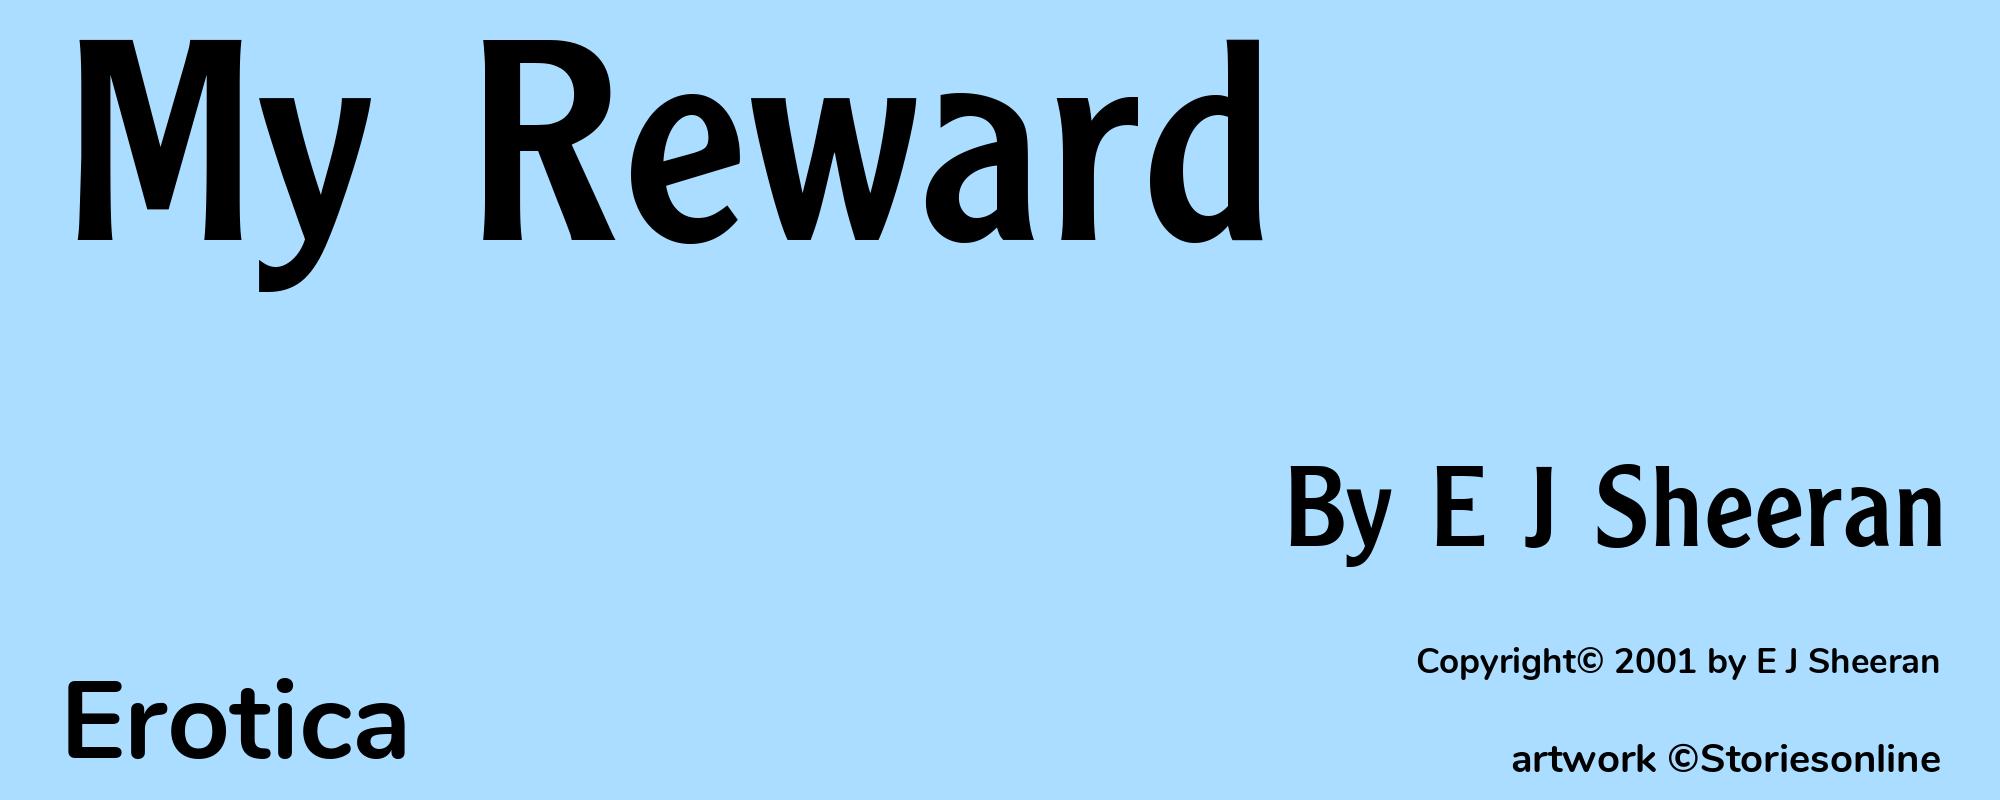 My Reward - Cover